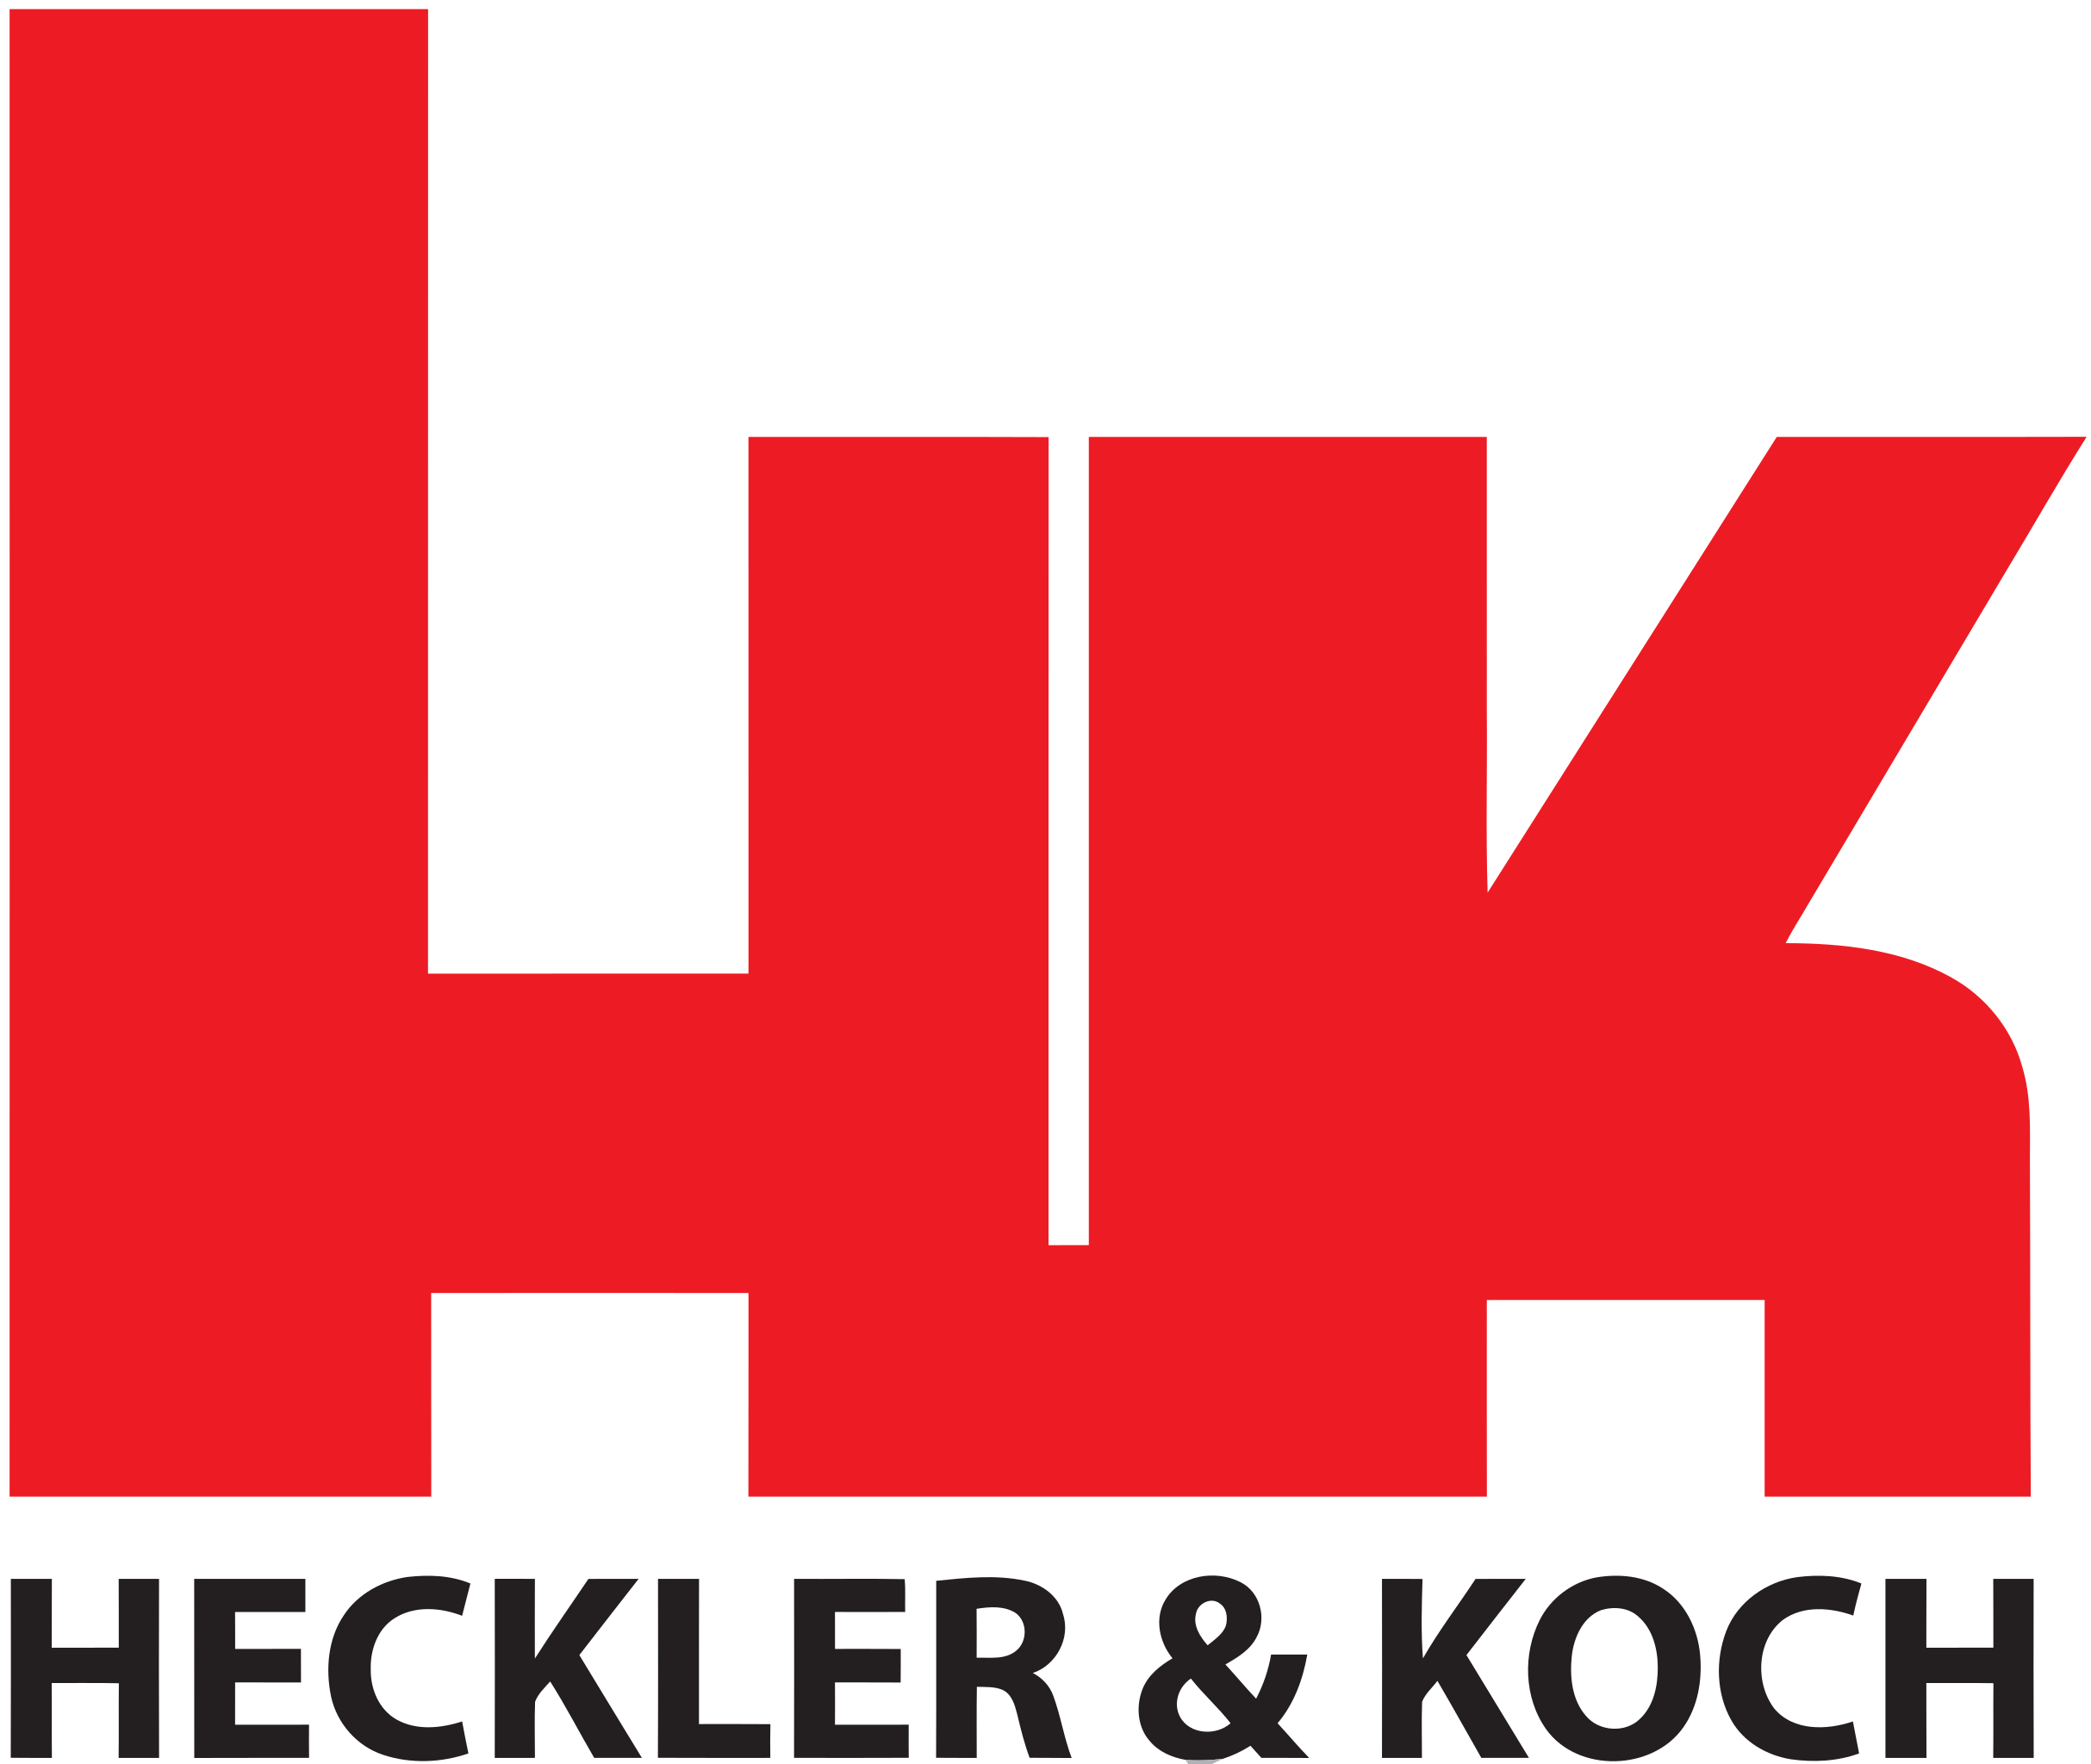 Heckler_&_Koch_logo